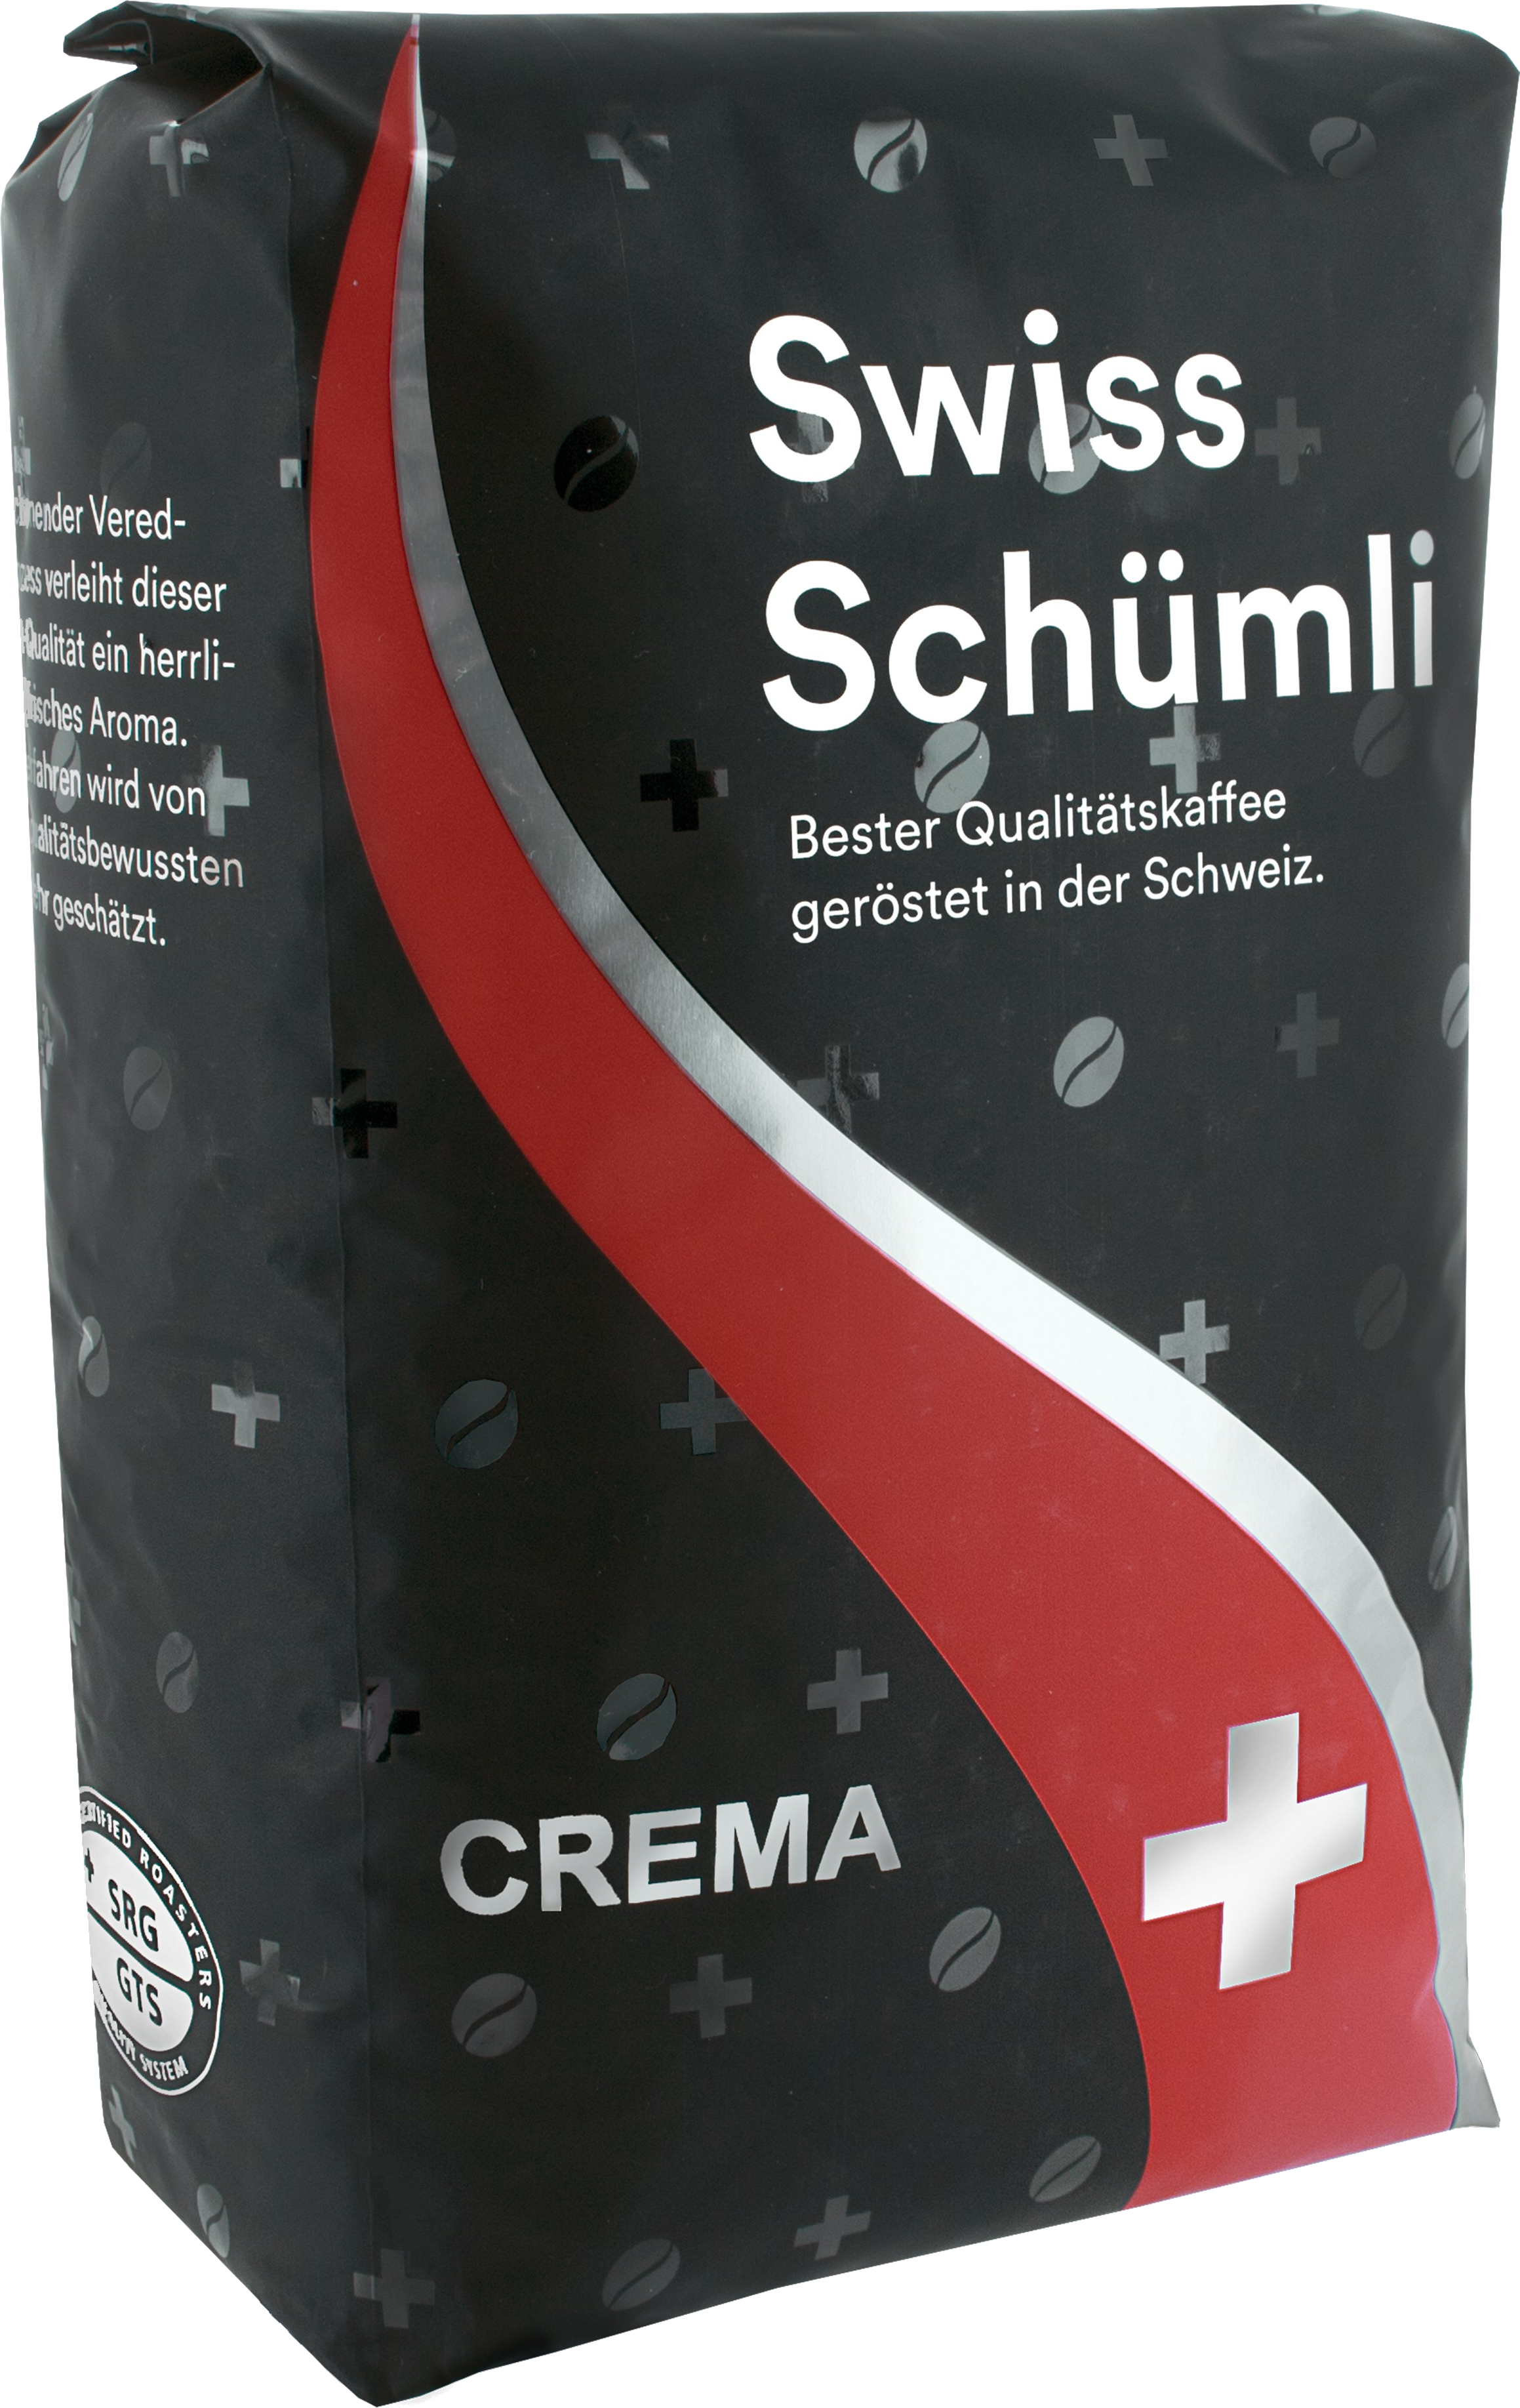 Swiss Schümli Crema